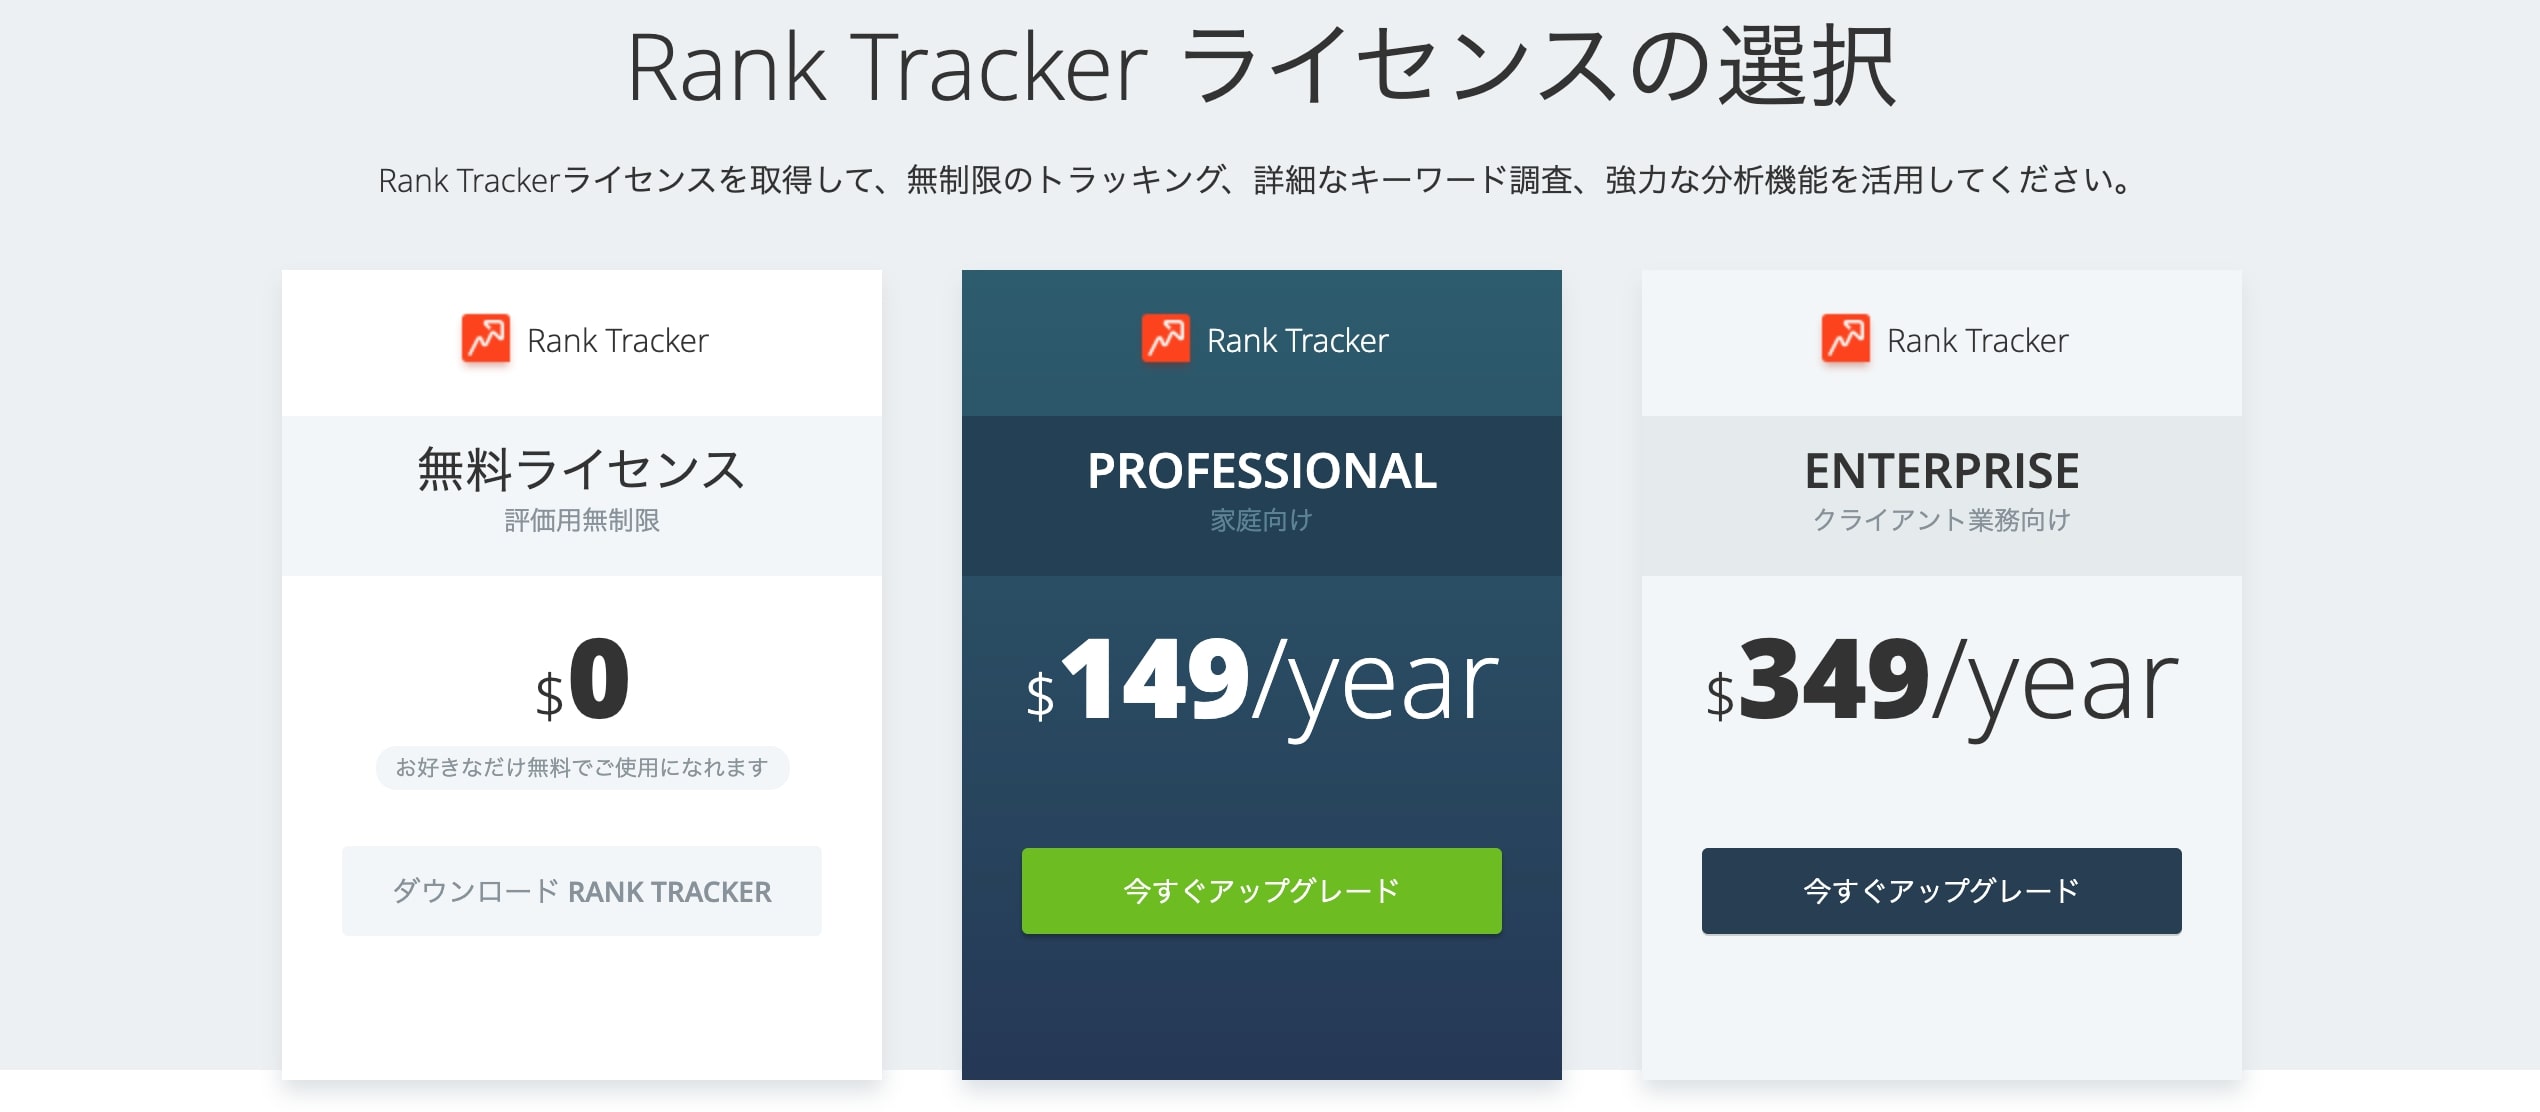 Rank Tracker「プロフェッショナル版」は$149/年です（2020年11月現在）